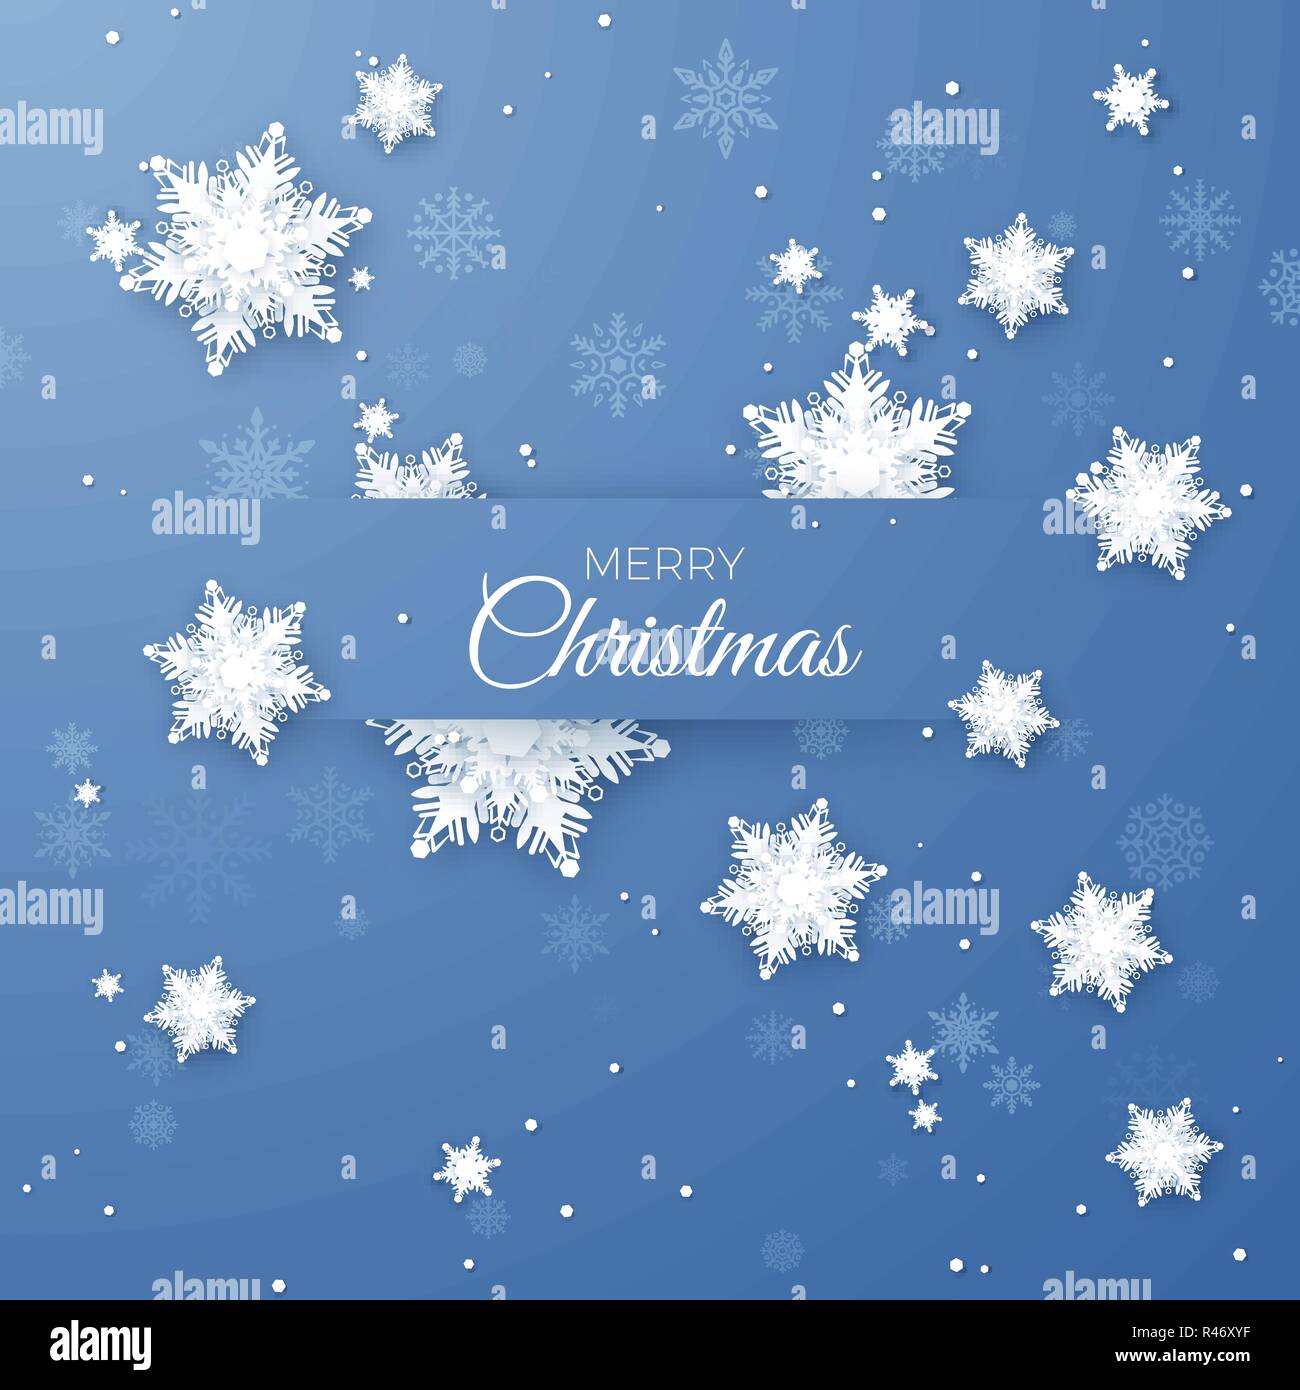 Frohe Weihnachten Gruß Abbildung. Papier Schneeflocken Muster Hintergrund. Origami Schneefall. Vektor isoliert auf blauem Hintergrund Stock Vektor